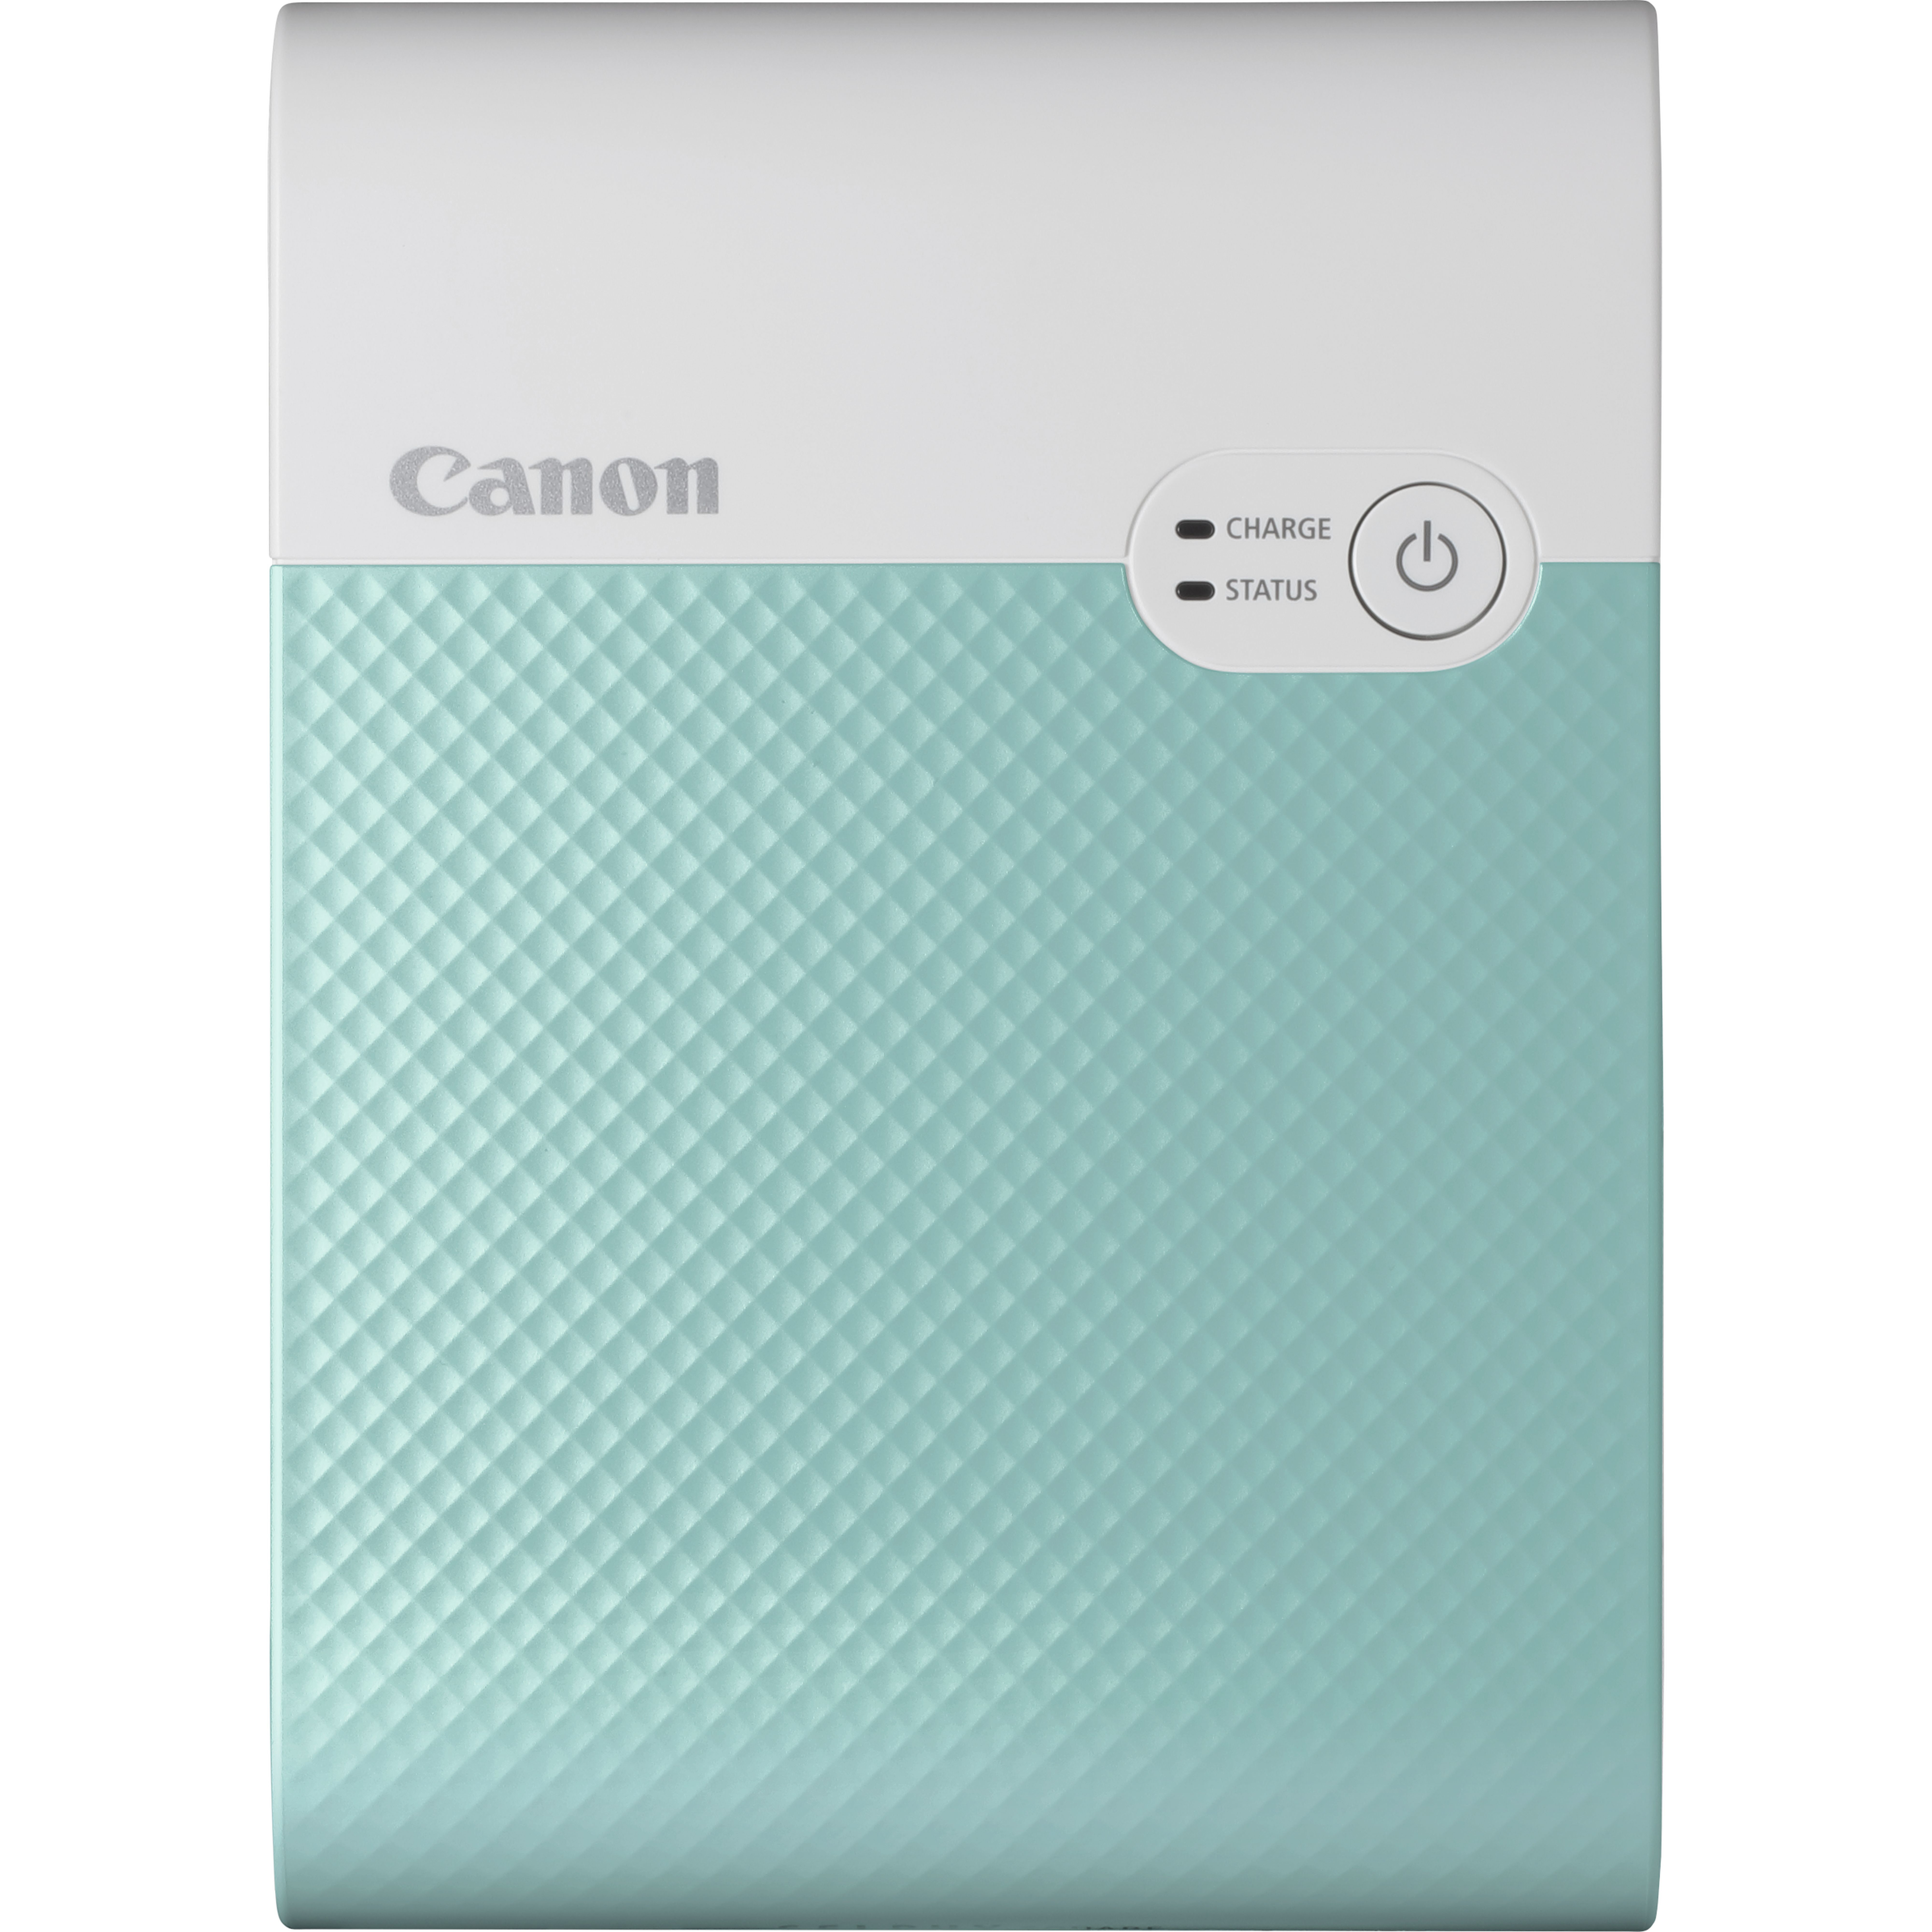 Image of Canon SELPHY Stampante fotografica portatile wireless a colori SQUARE QX10, verde menta